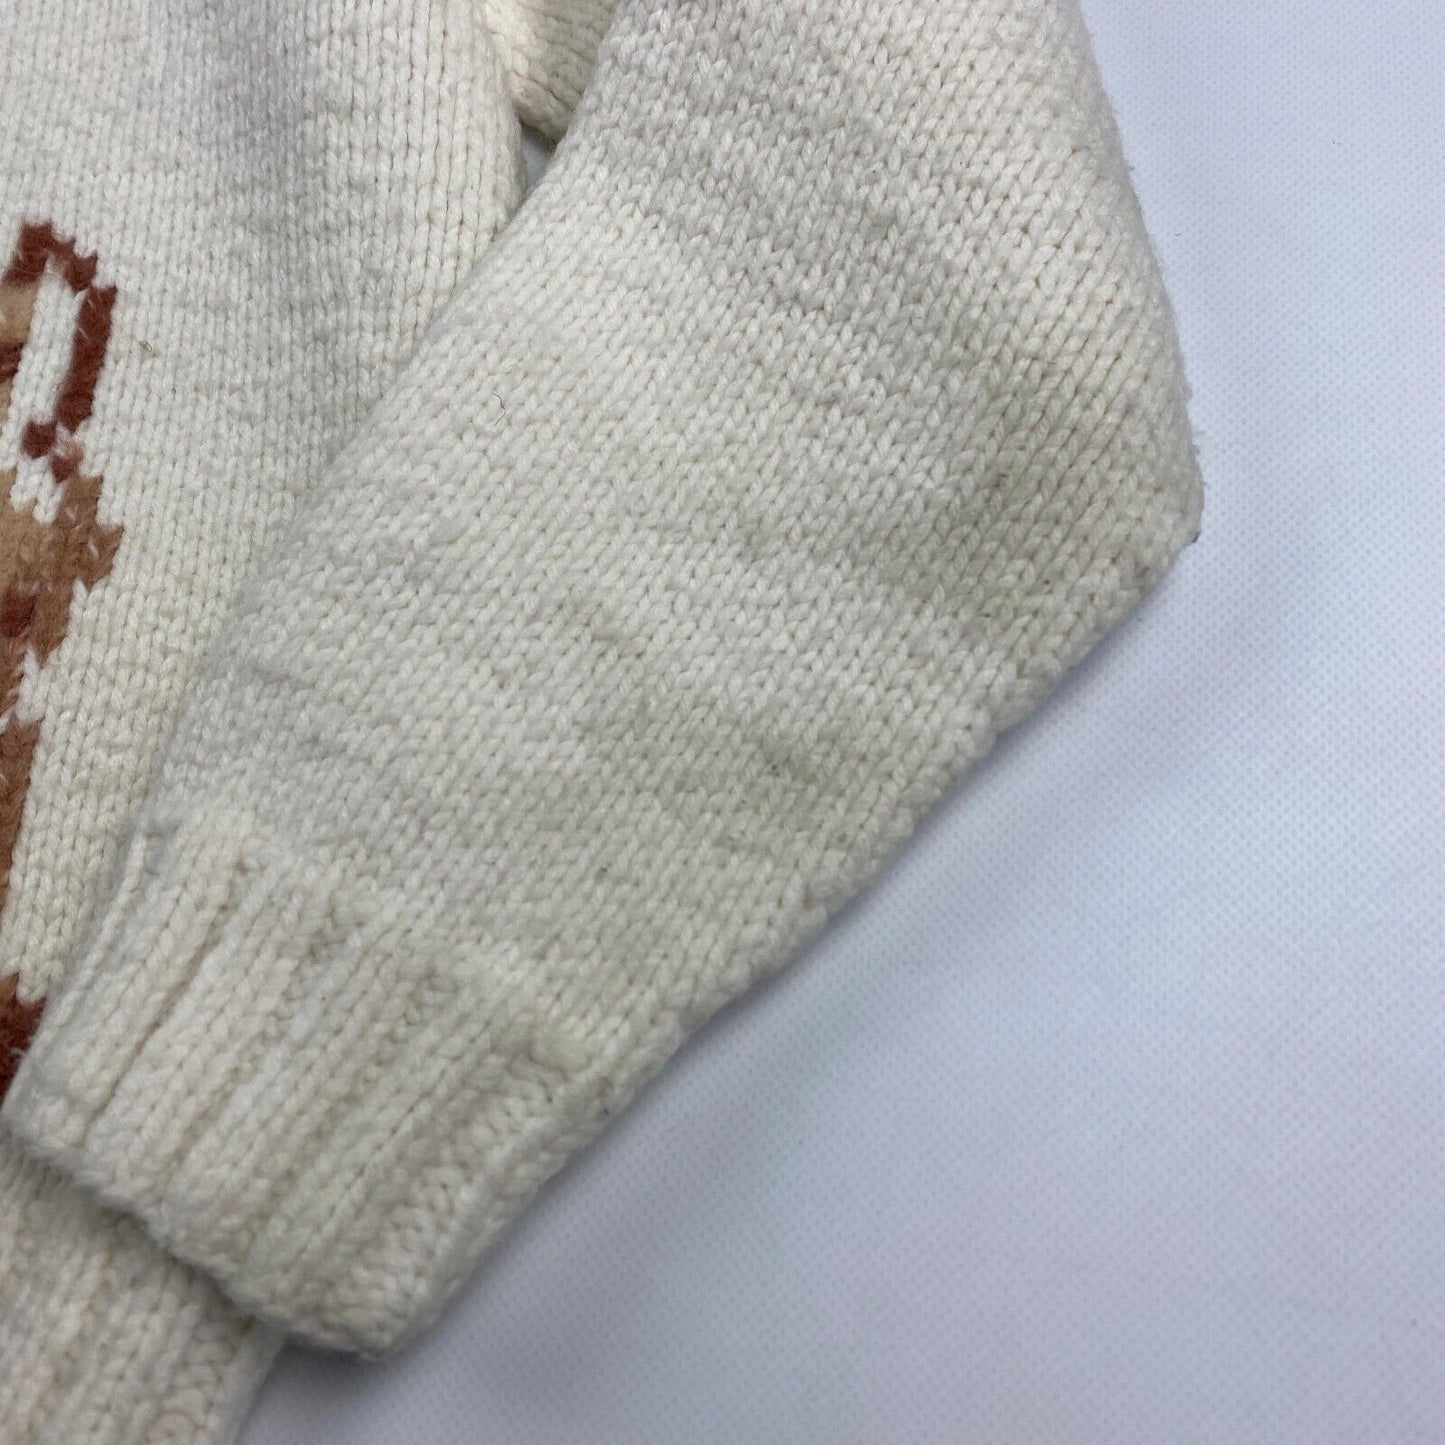 VINTAGE 70s Deer Print Cowichan Knit Zip Up Cardigan Sweater sz Medium Men